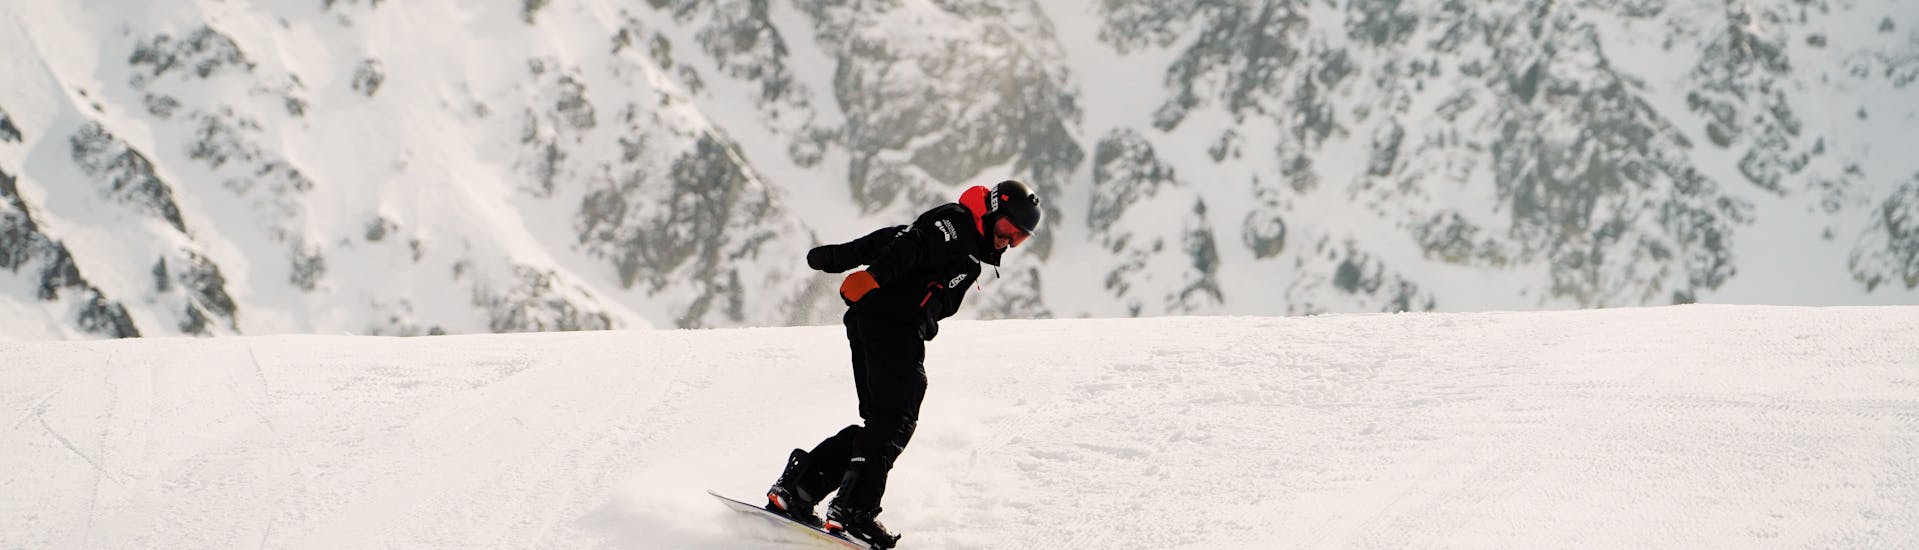 Privélessen snowboarden voor alle niveaus & leeftijden.